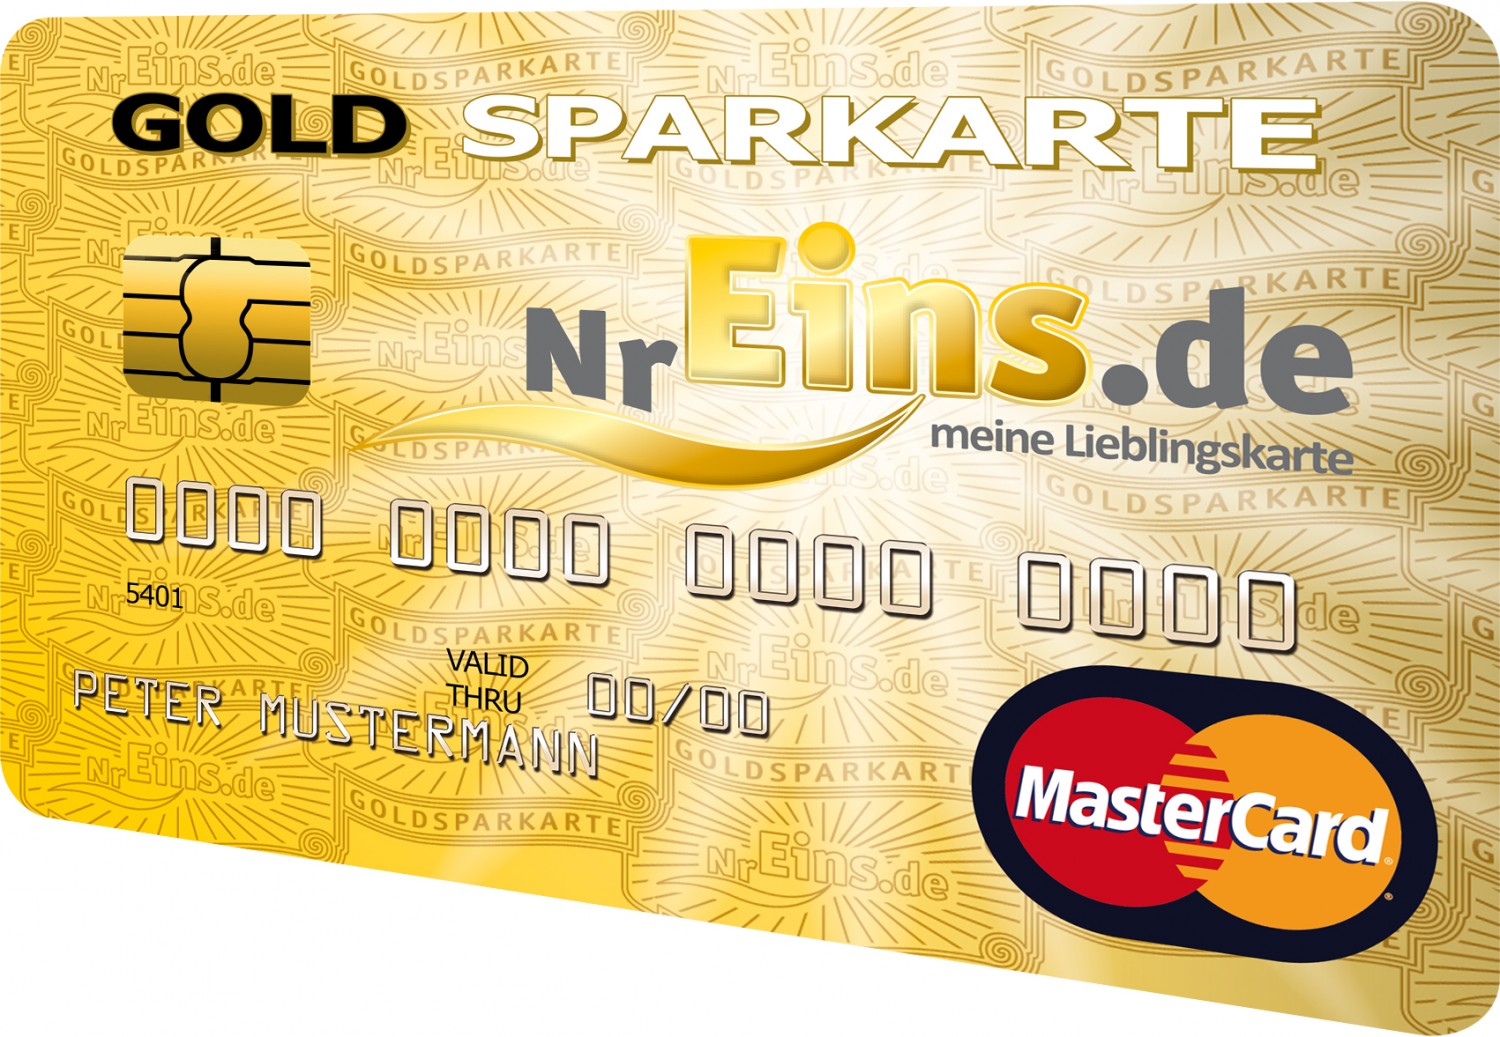 Die GoldSPARKARTE erfüllt alle Wünsche an die ideale Kreditkarte